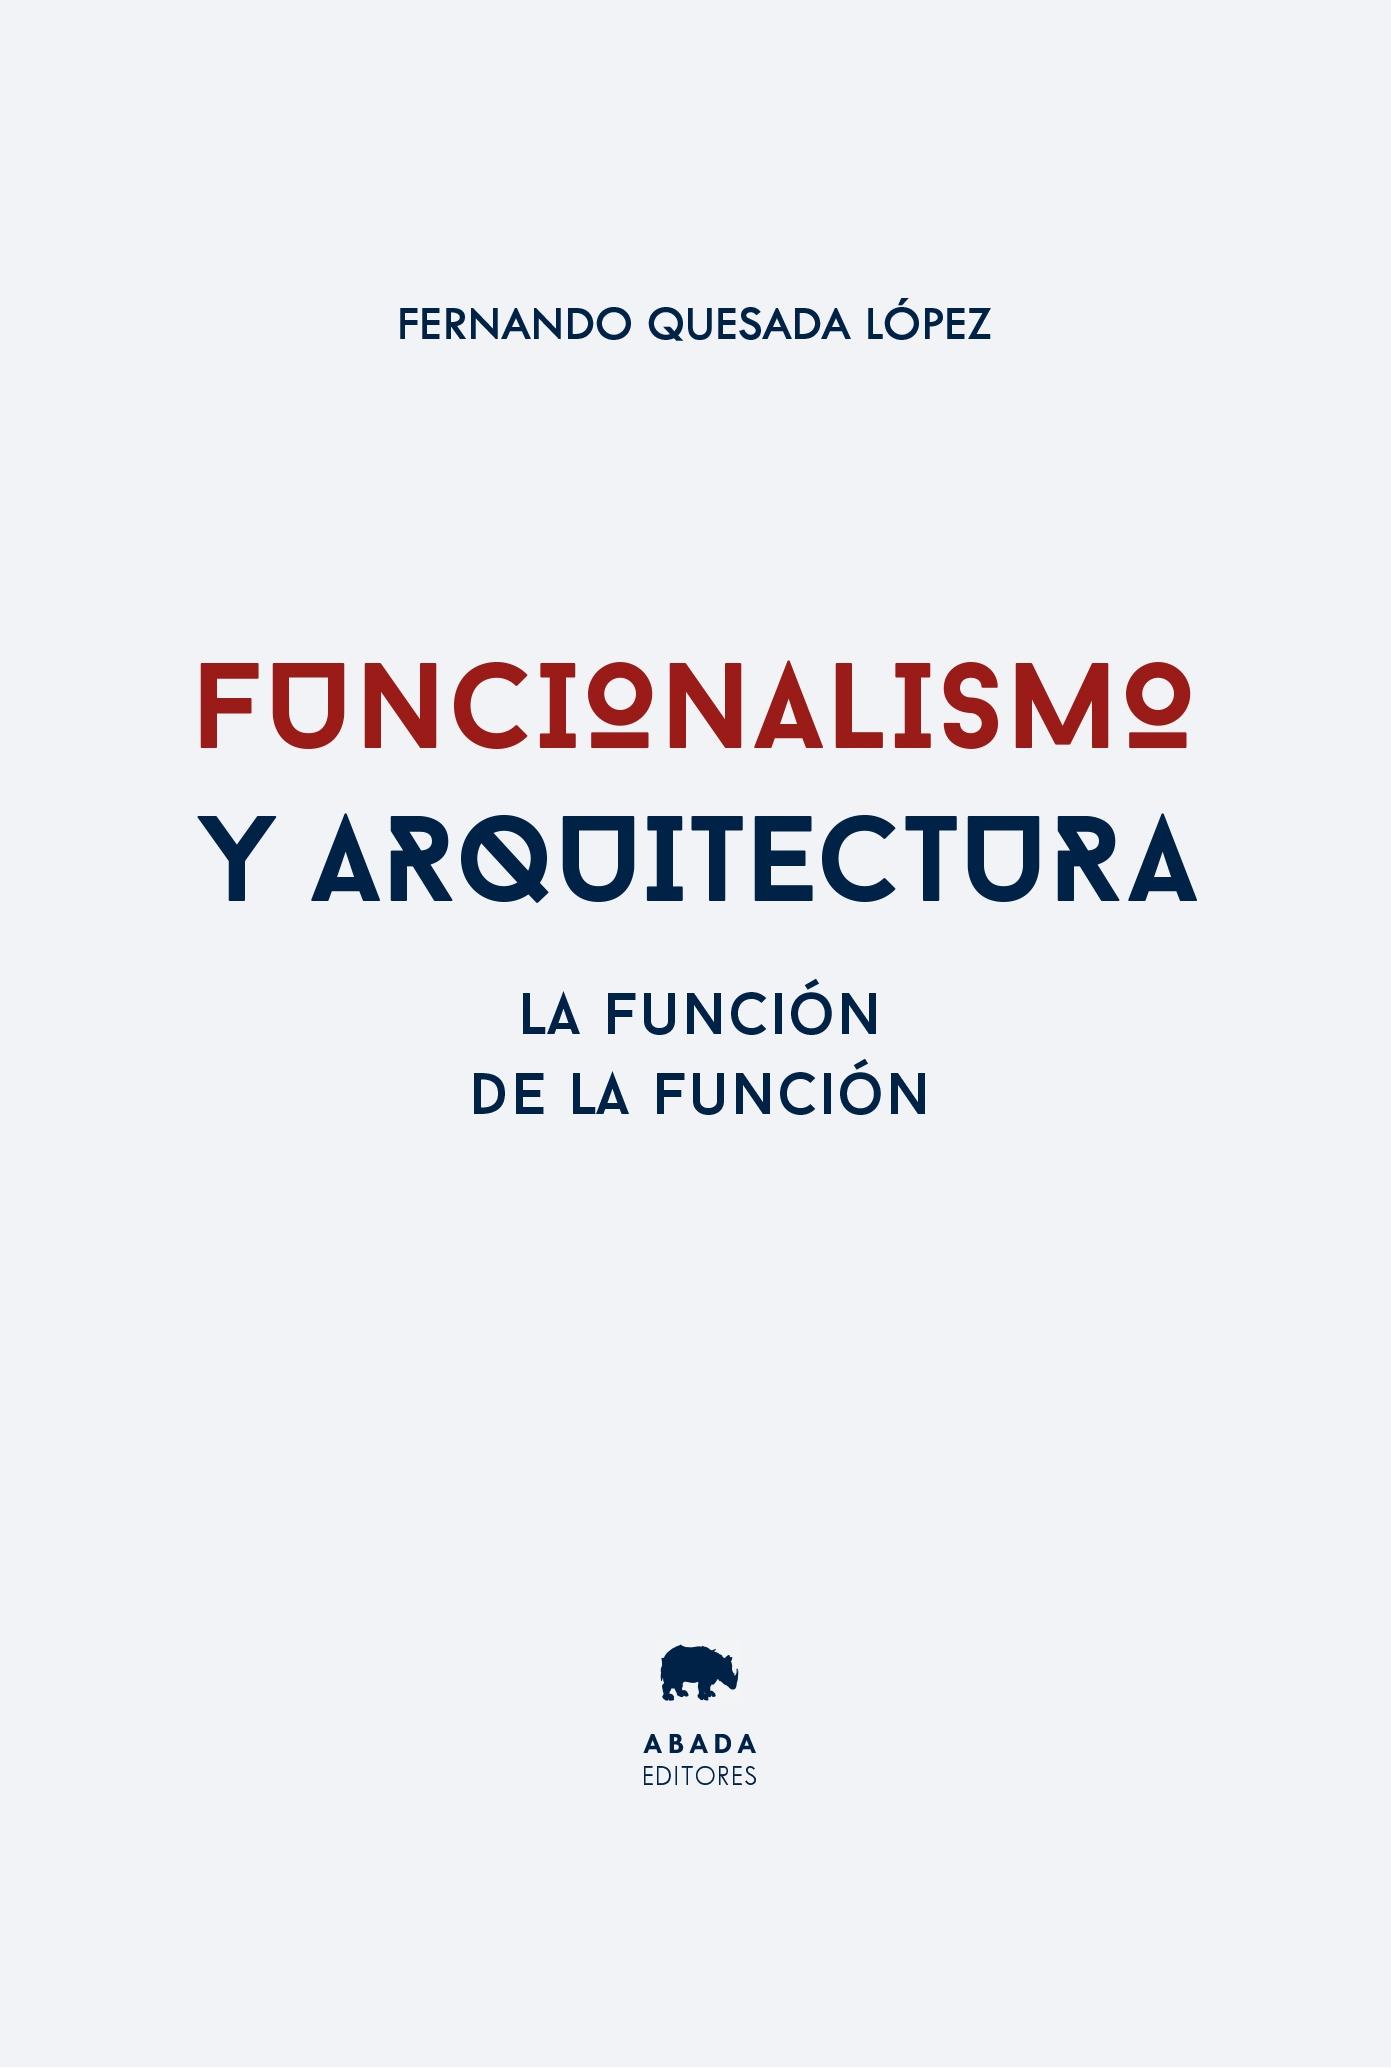 Funcionalismo y arquitectura "La función de la función"